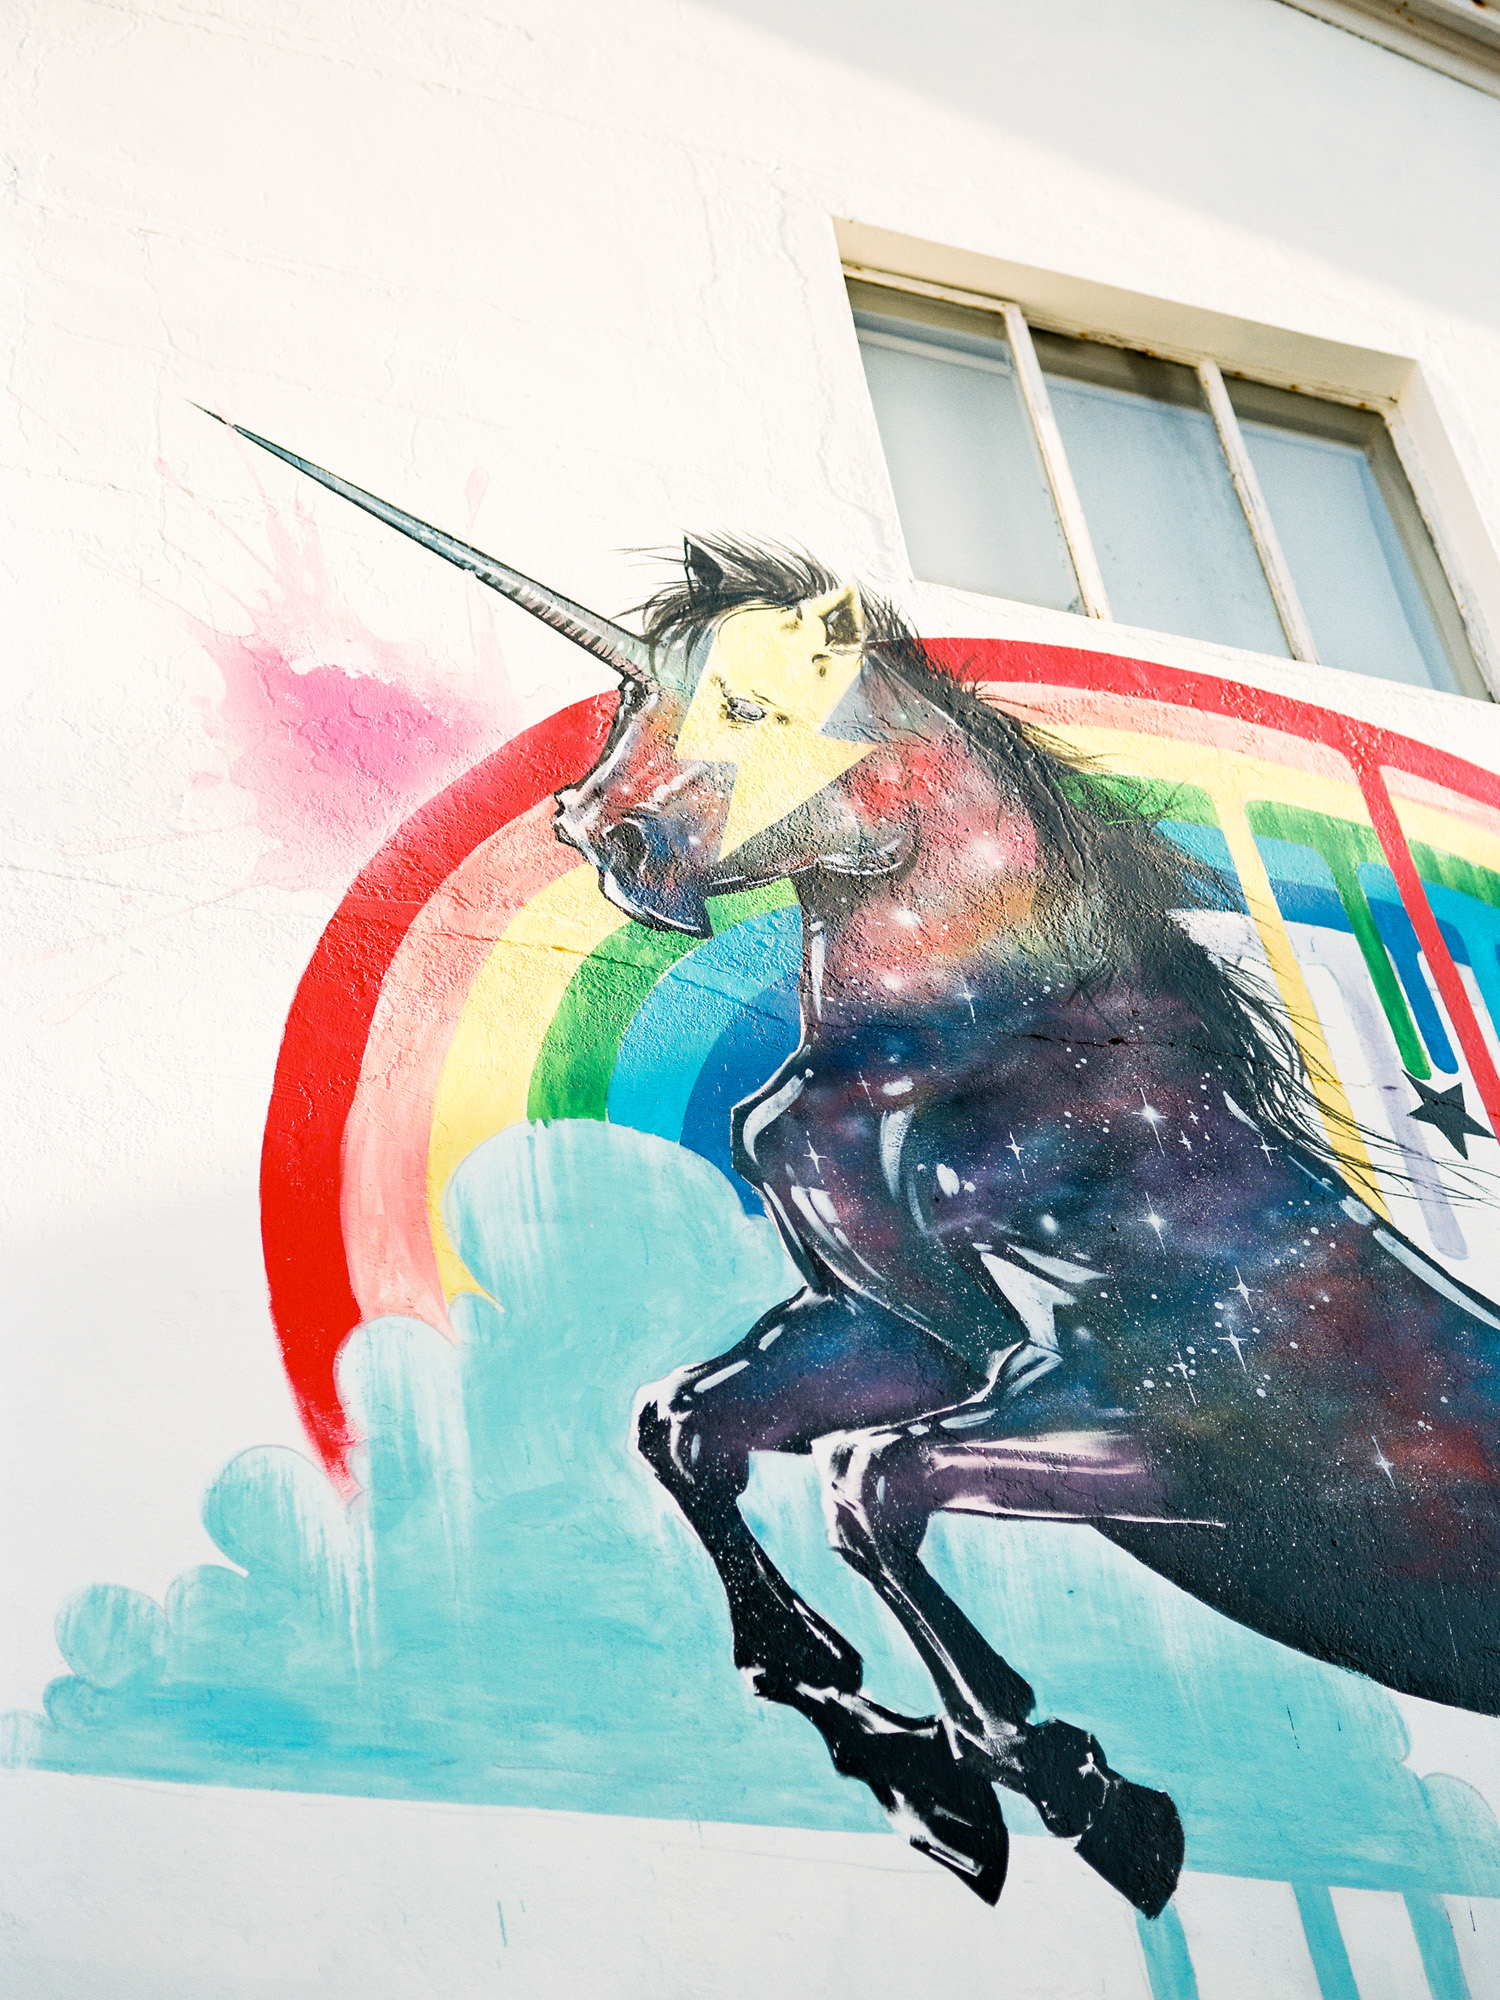 iceland reykjavik unicorn mural street art.jpg